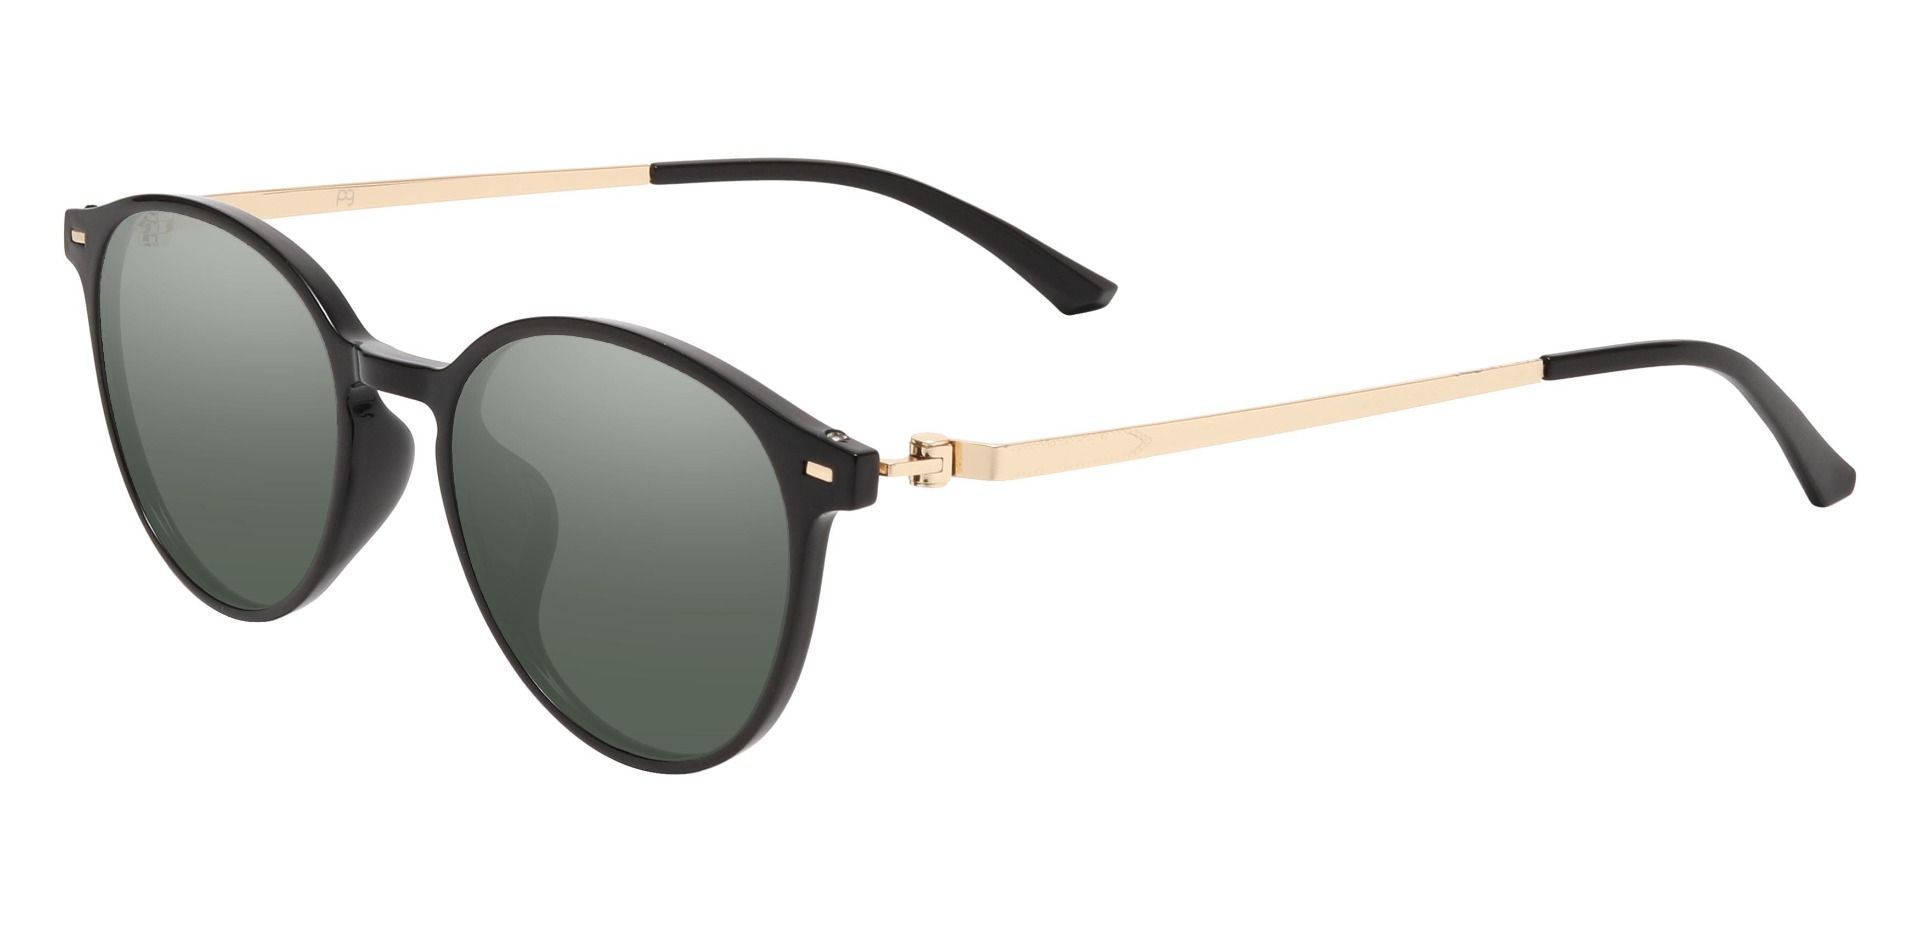 Springer Round Non-Rx Sunglasses - Black Frame With Green Lenses